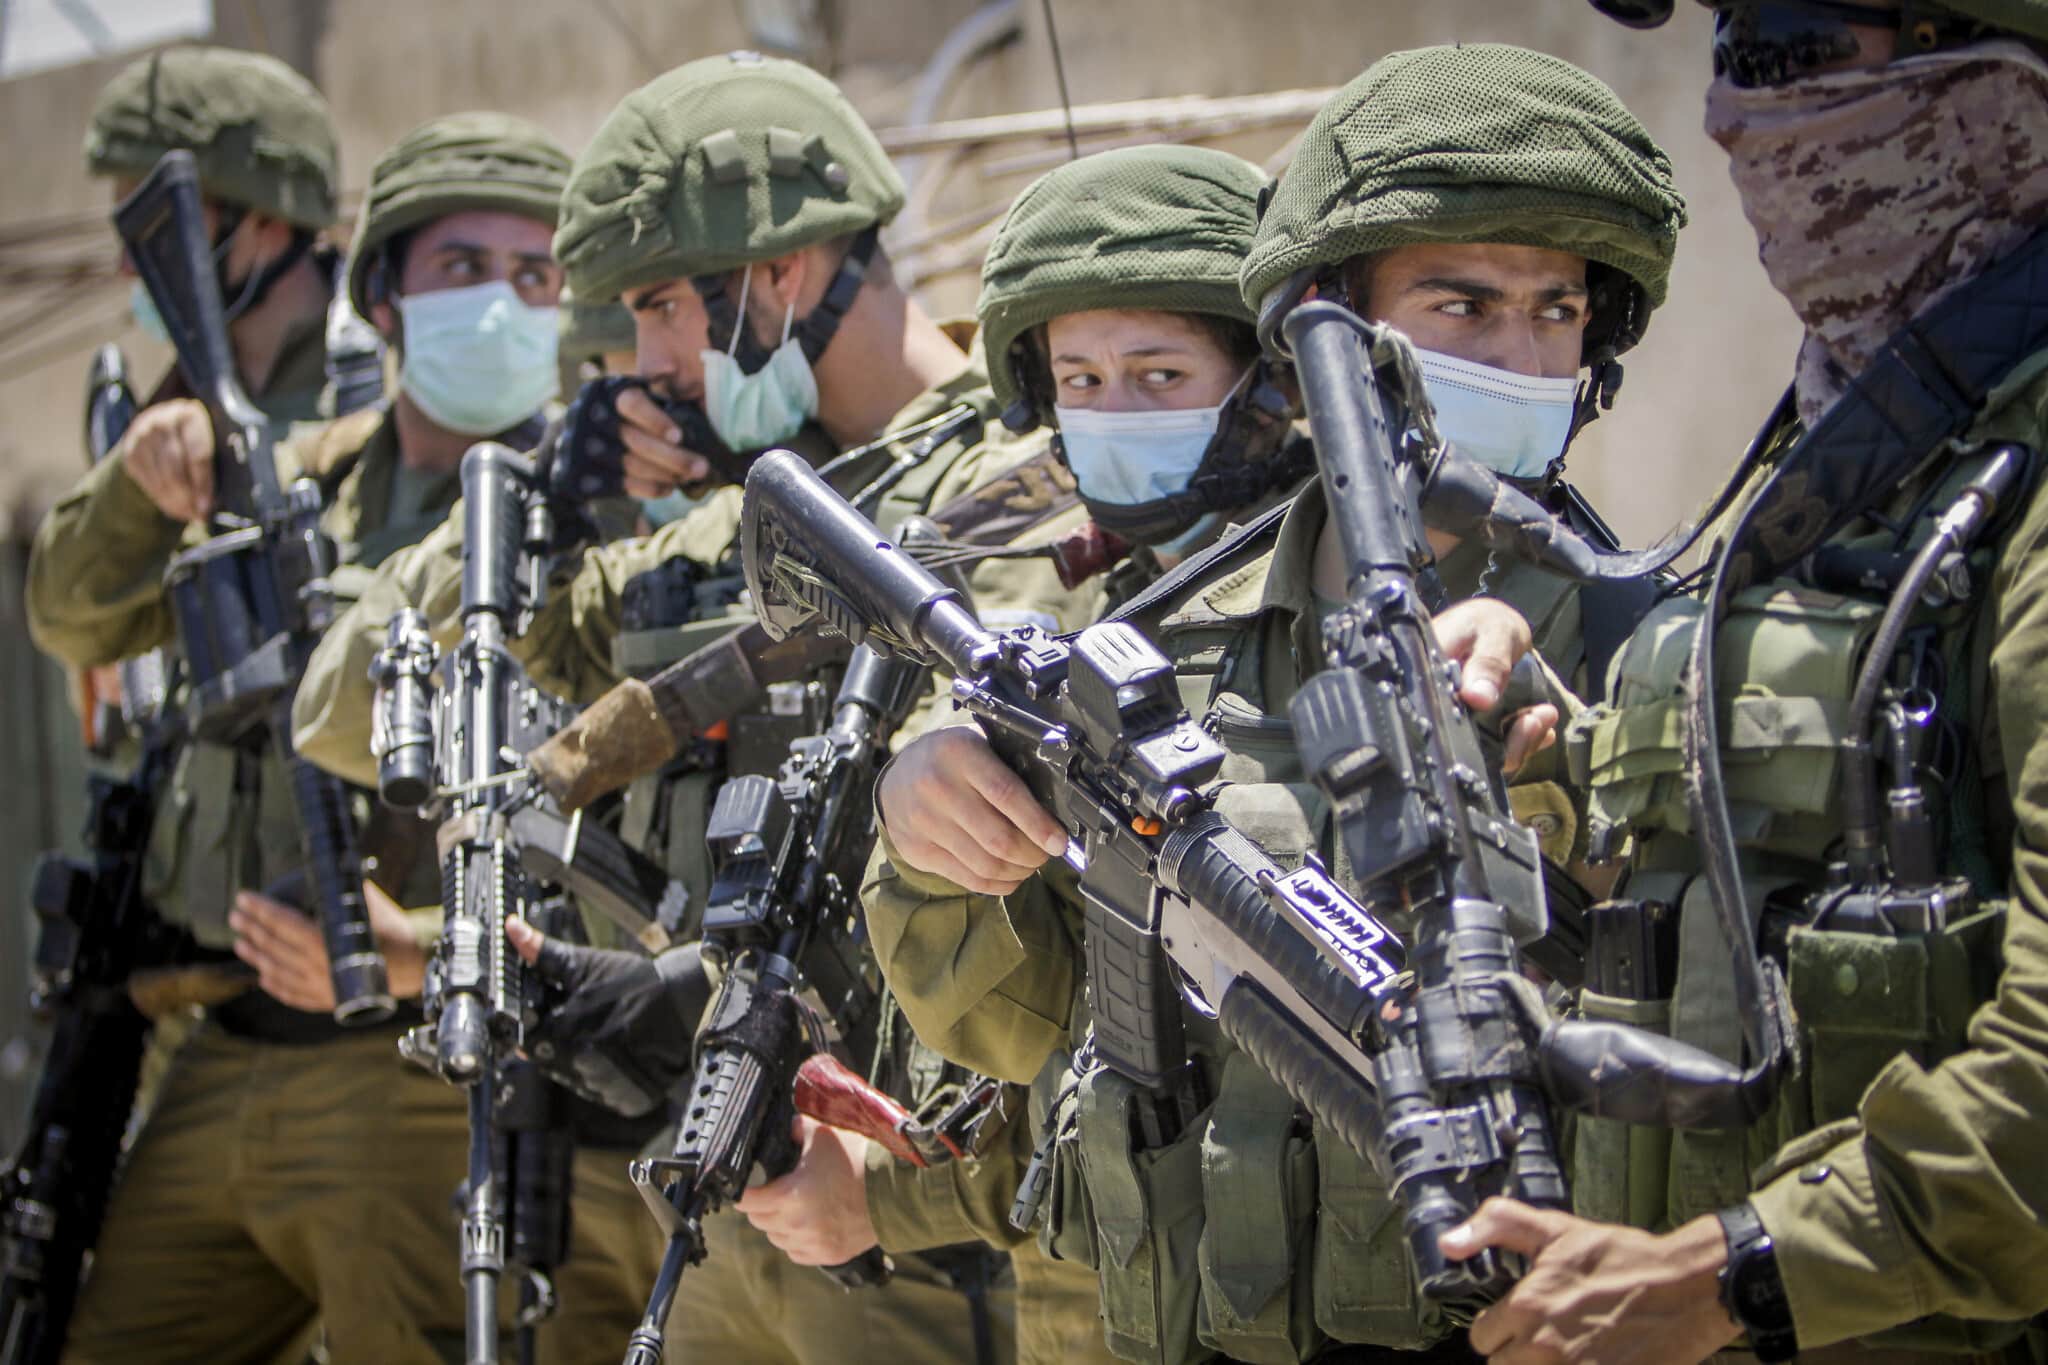 חיילים ישראלים מביטים במחאה פלסטינית נגד הסיפוח, יוני 2020 (צילום: Nasser Ishtayeh/Flash90)